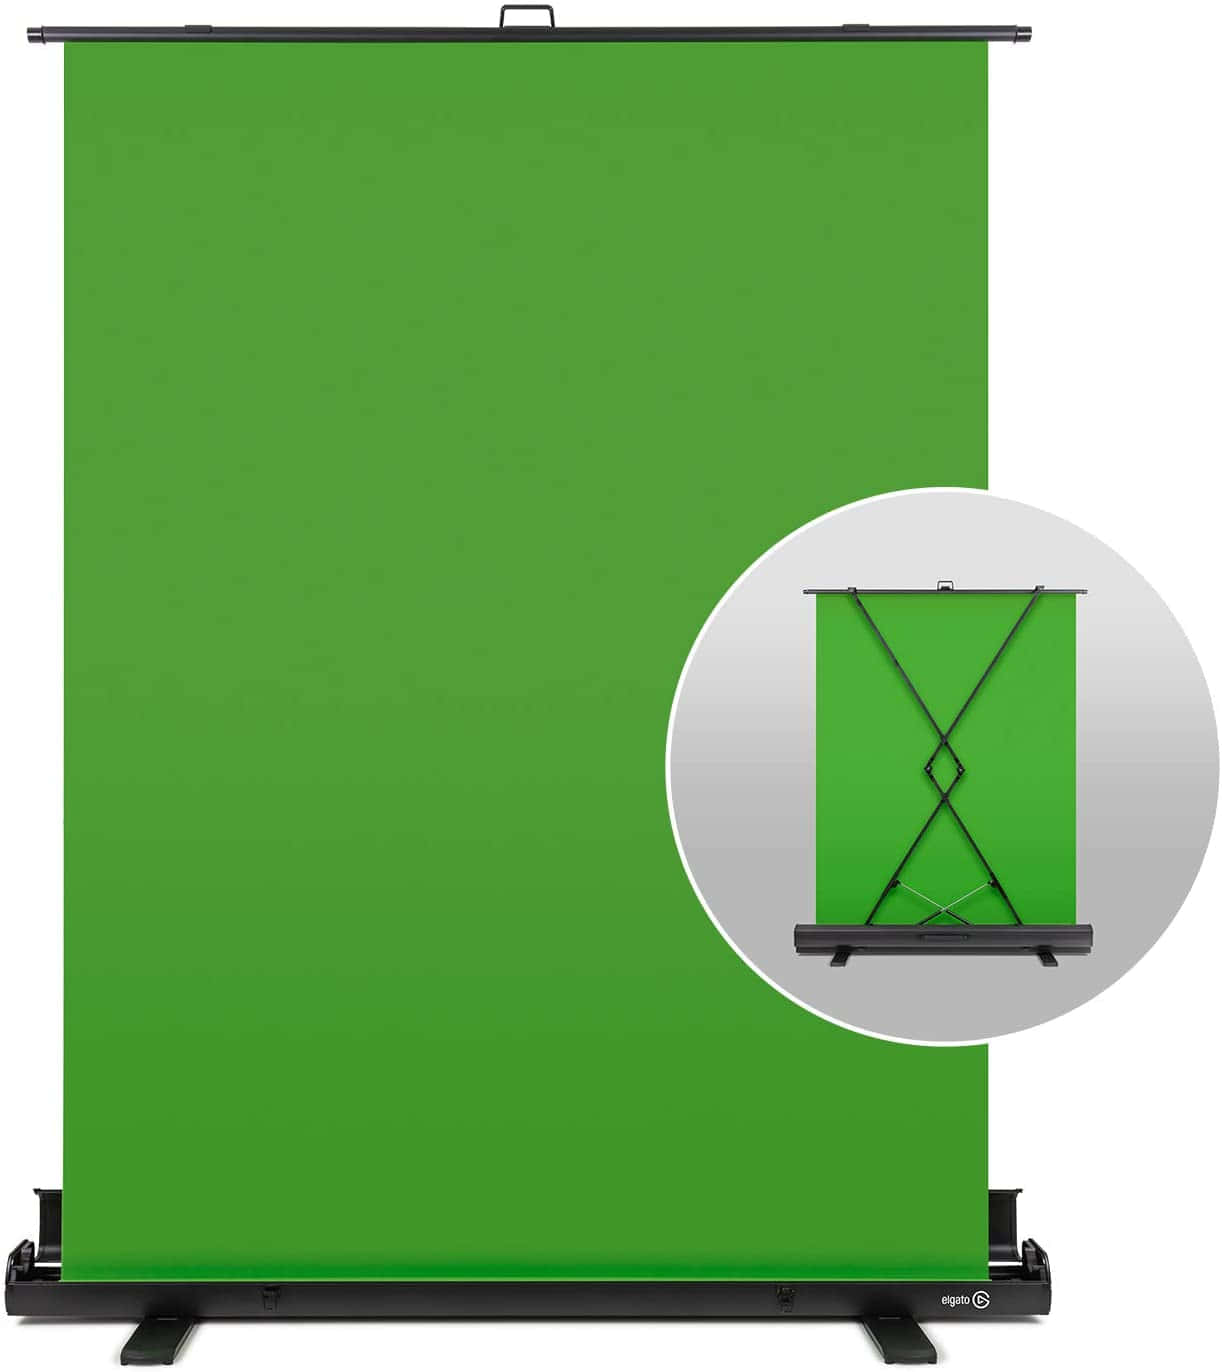 Grönaskärmbilder